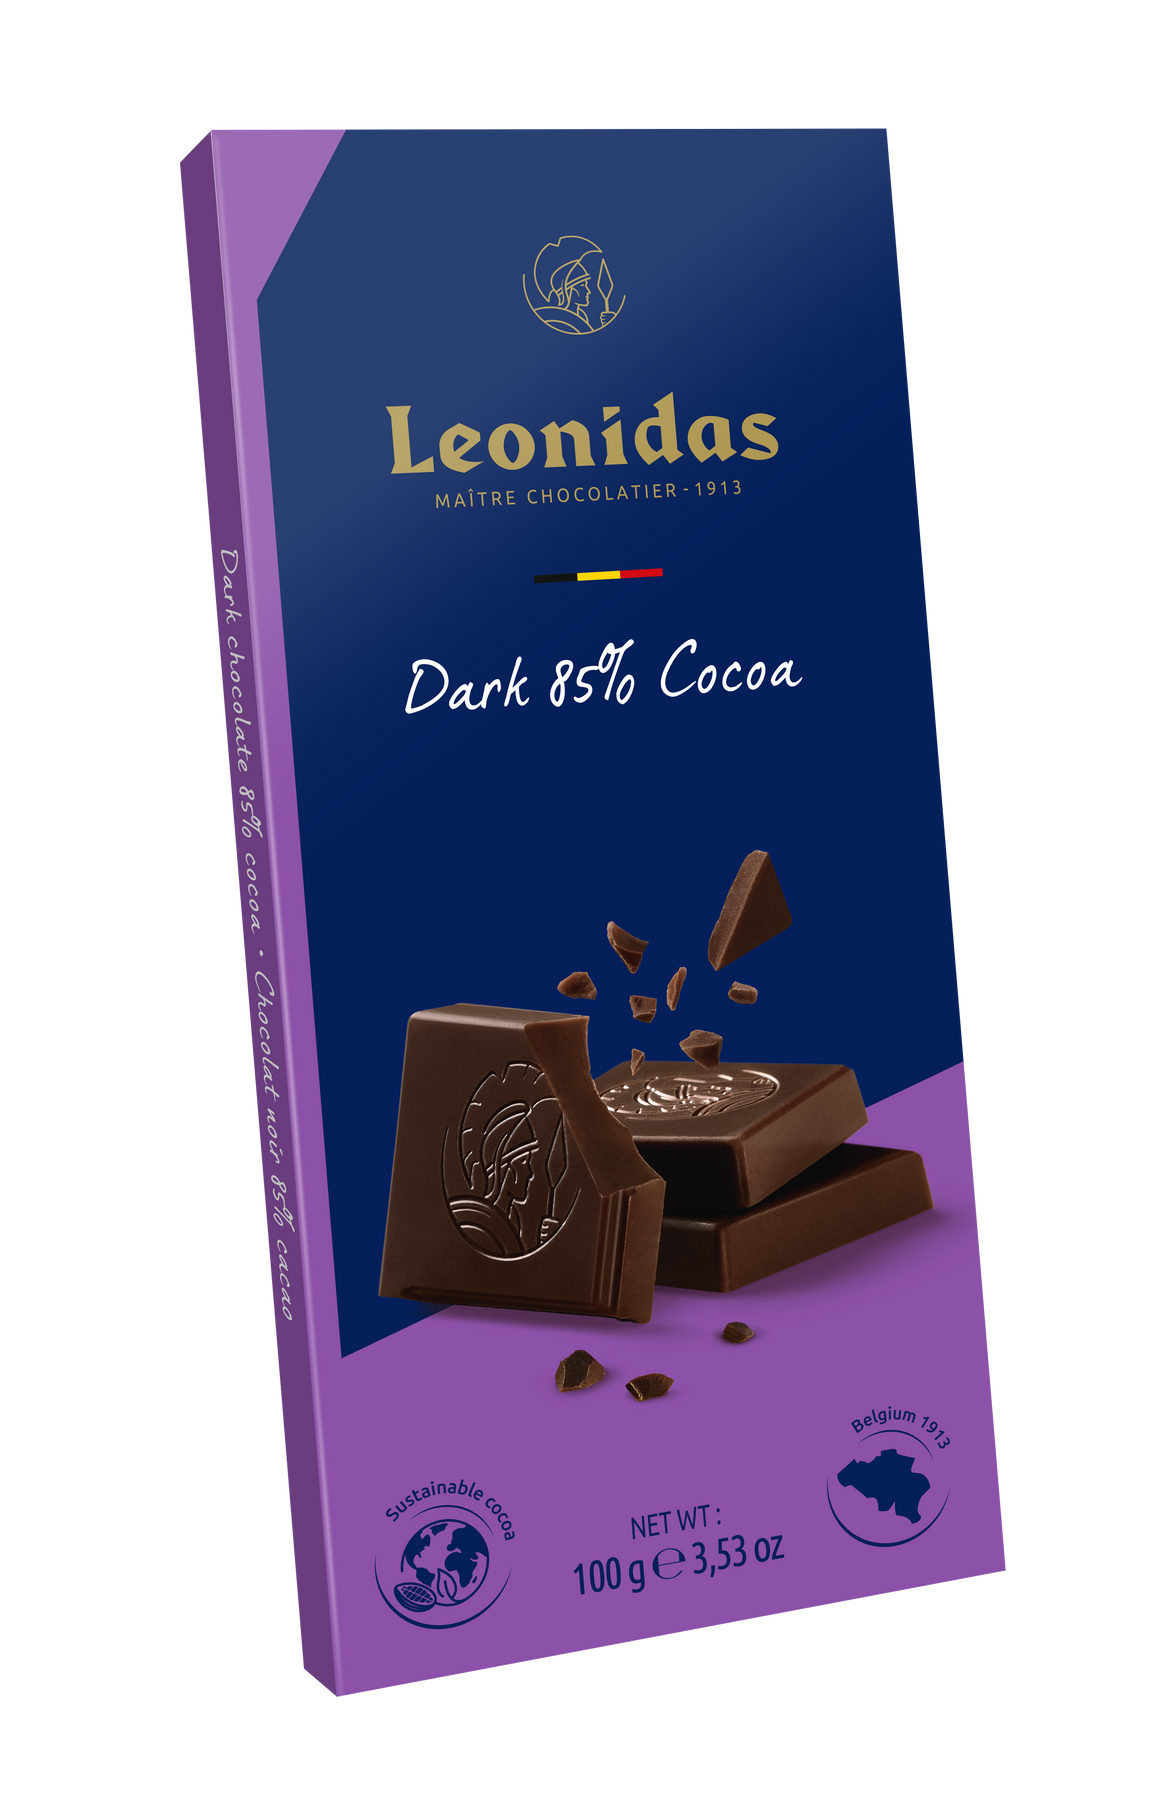 Léonidas, Boites de chocolat belge assortis 2 – Bistro Café La Boulangère